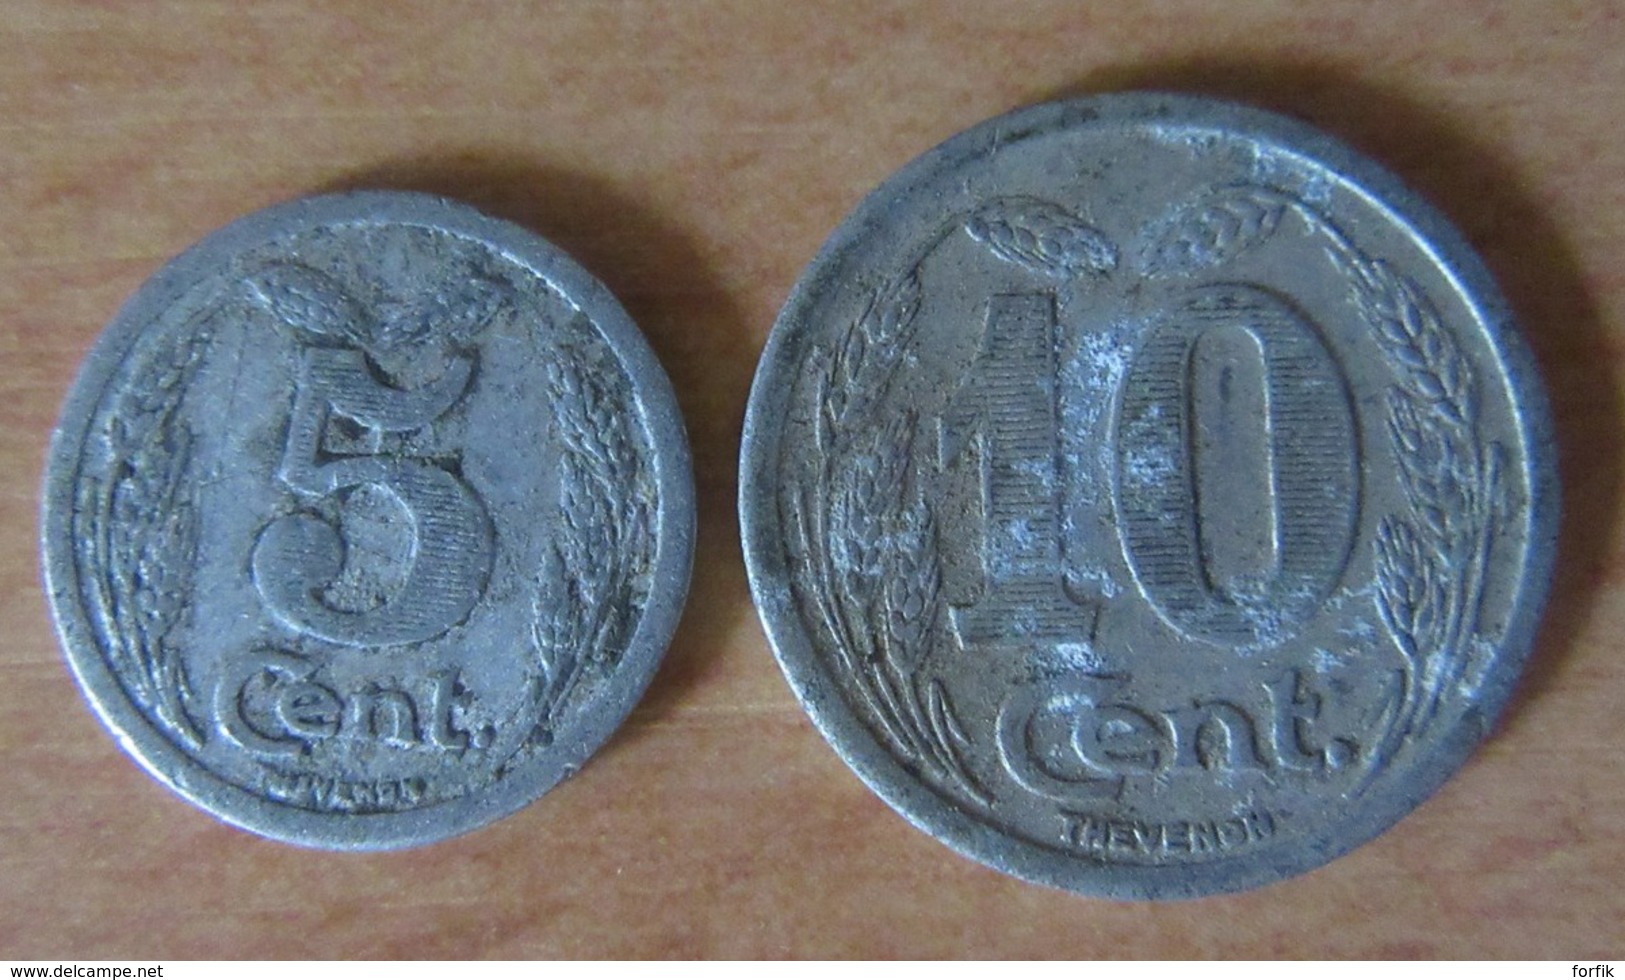 France Lot de 84 Monnaies / jetons de nécessité de villes - 1916 à 1930 - Aluminium - dont St Malo Tramway - Voir détail